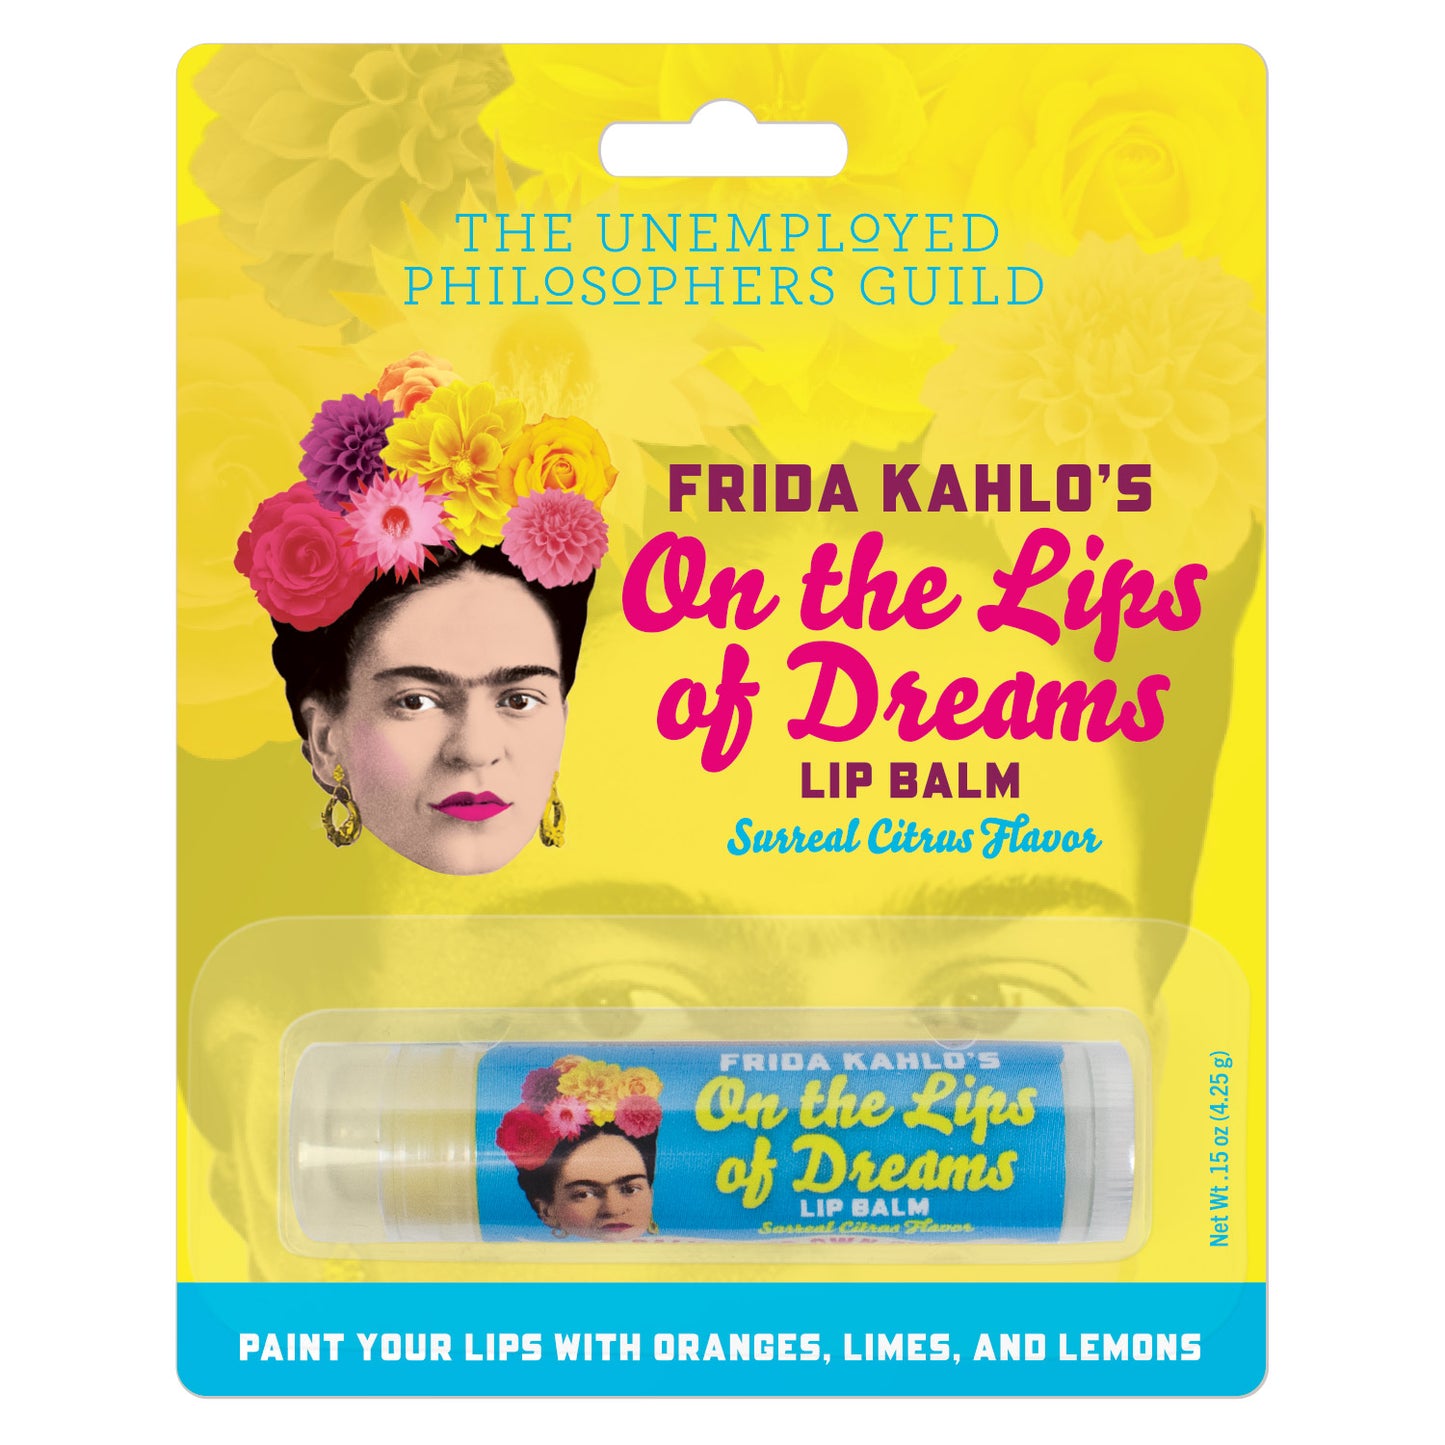 Frida Kahlo's Lip Balm UPG